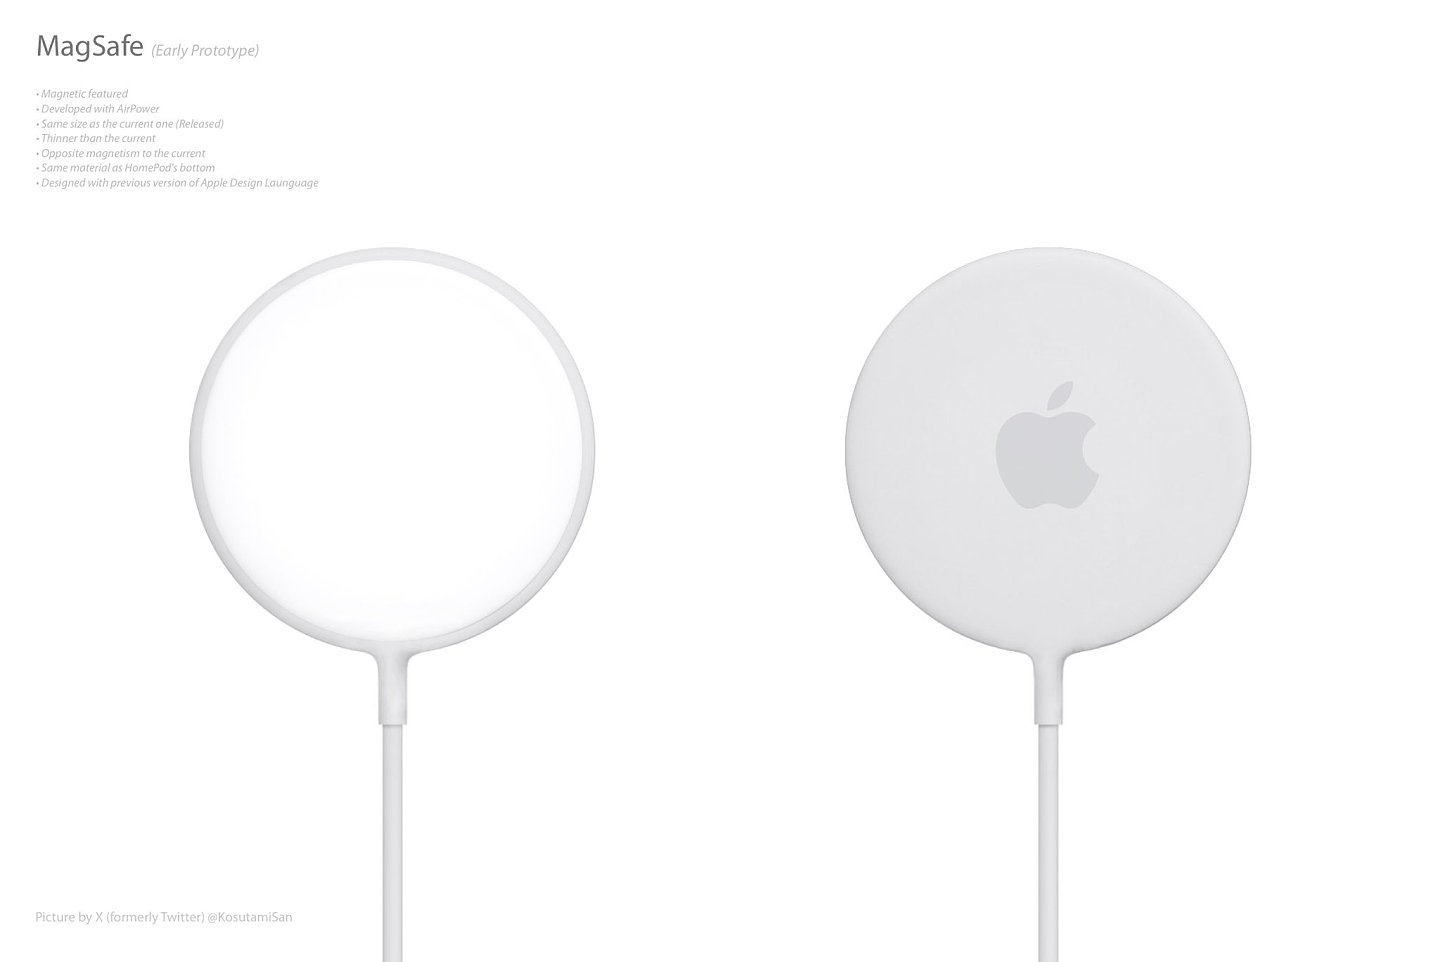 苹果 MagSafe 充电器早期原型曝光：橡胶外壳、Logo 醒目 - 4